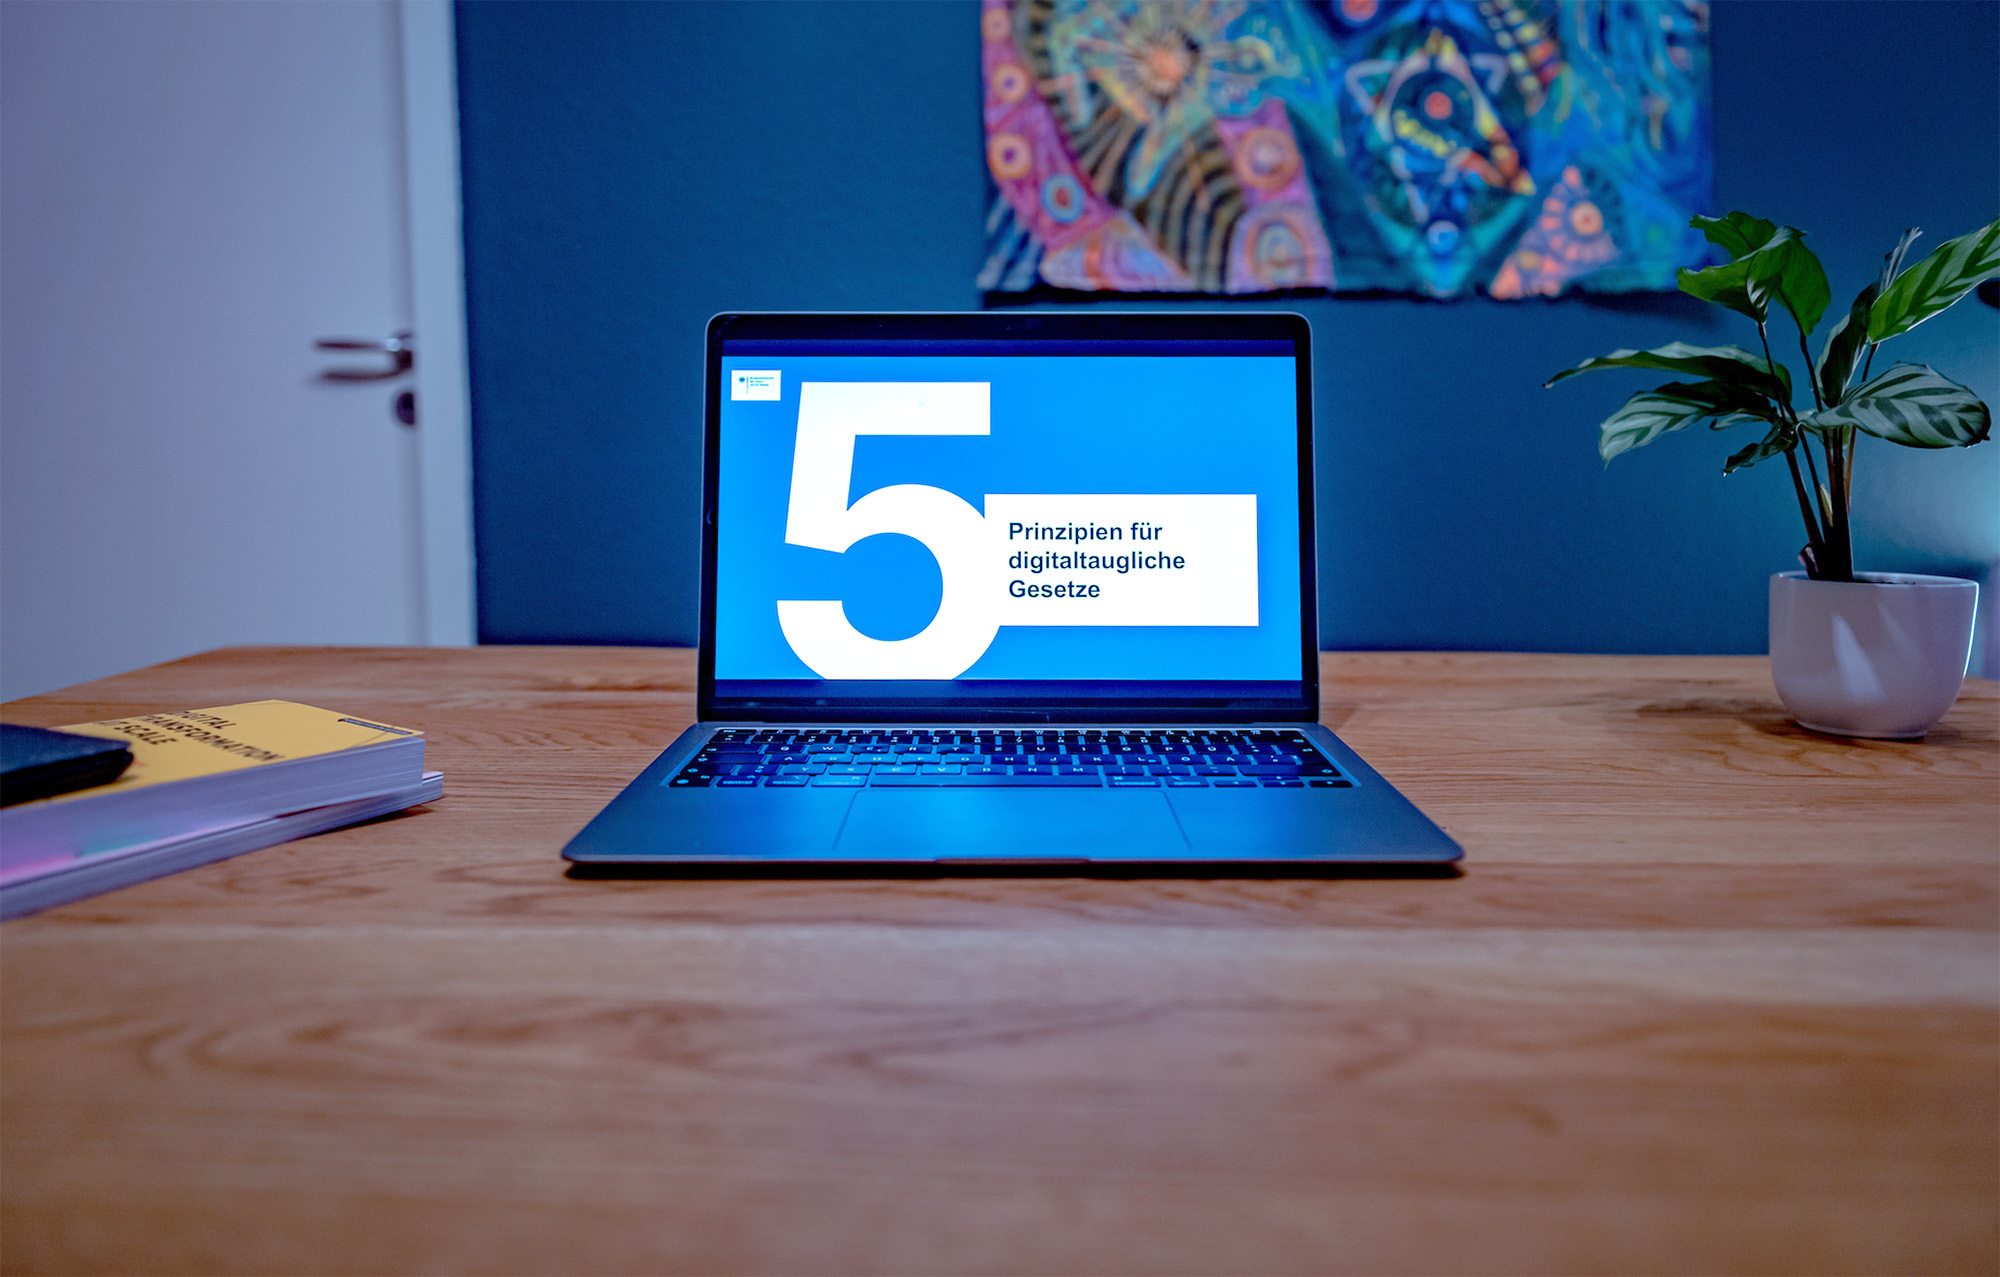 Ein Laptop steht geöffnet auf einem Schreibtisch; auf dem Bildschirm ist die Folie einer Präsentation zu sehen auf der „5 Prinzipien für digitaltaugliche Gesetze“ steht